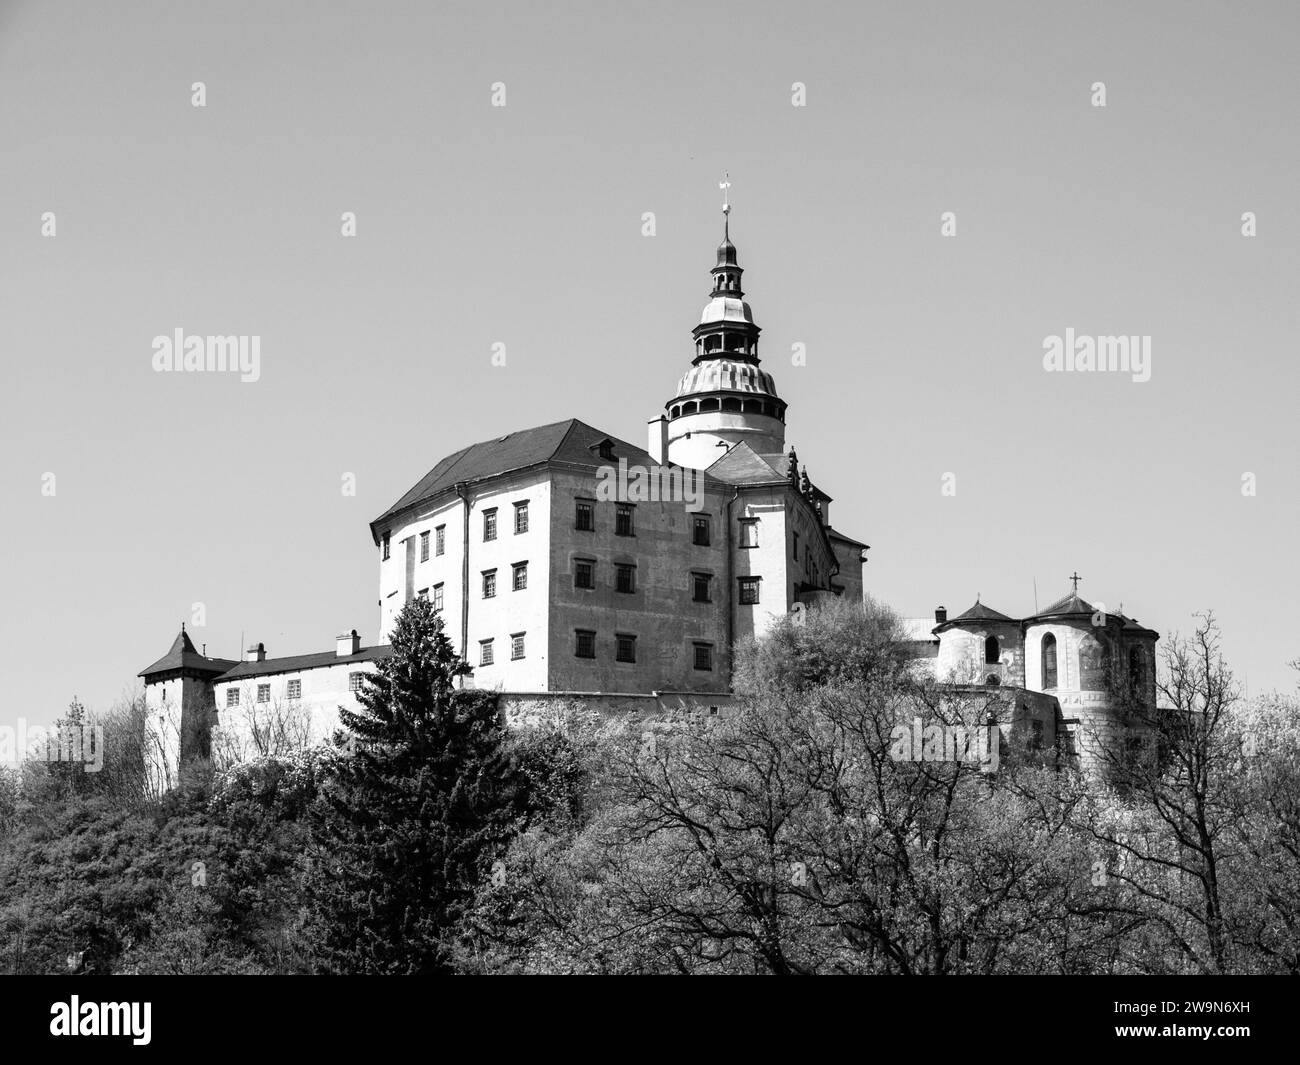 Frydlant v Cechach - Château gothique et château Renaissance avec haute tour dans le nord de la Bohême, République tchèque. Image en noir et blanc. Banque D'Images